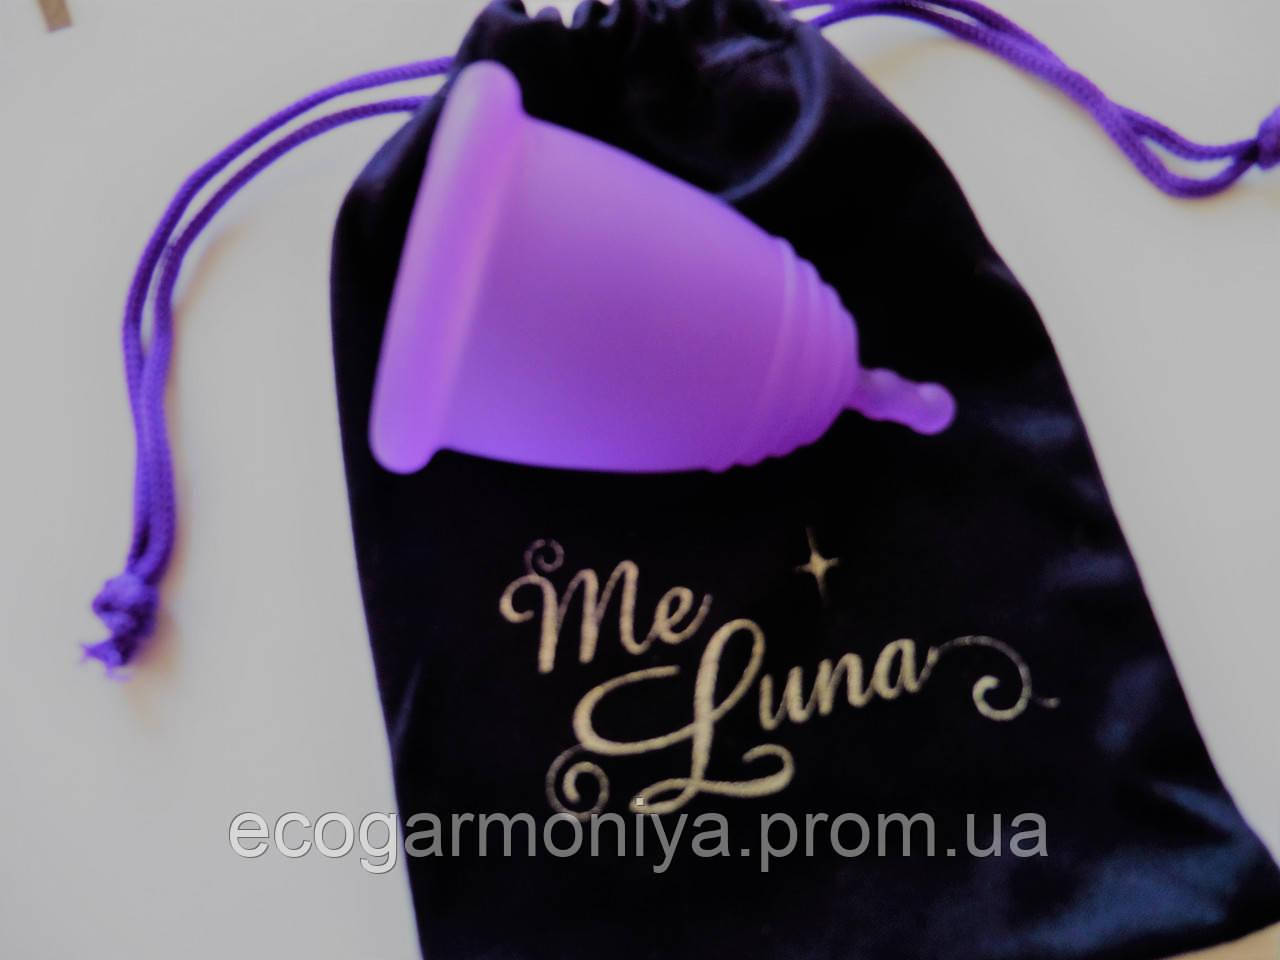 Німецька менструальна чаша Meluna L (чашечка Мелуна 1 шт.)